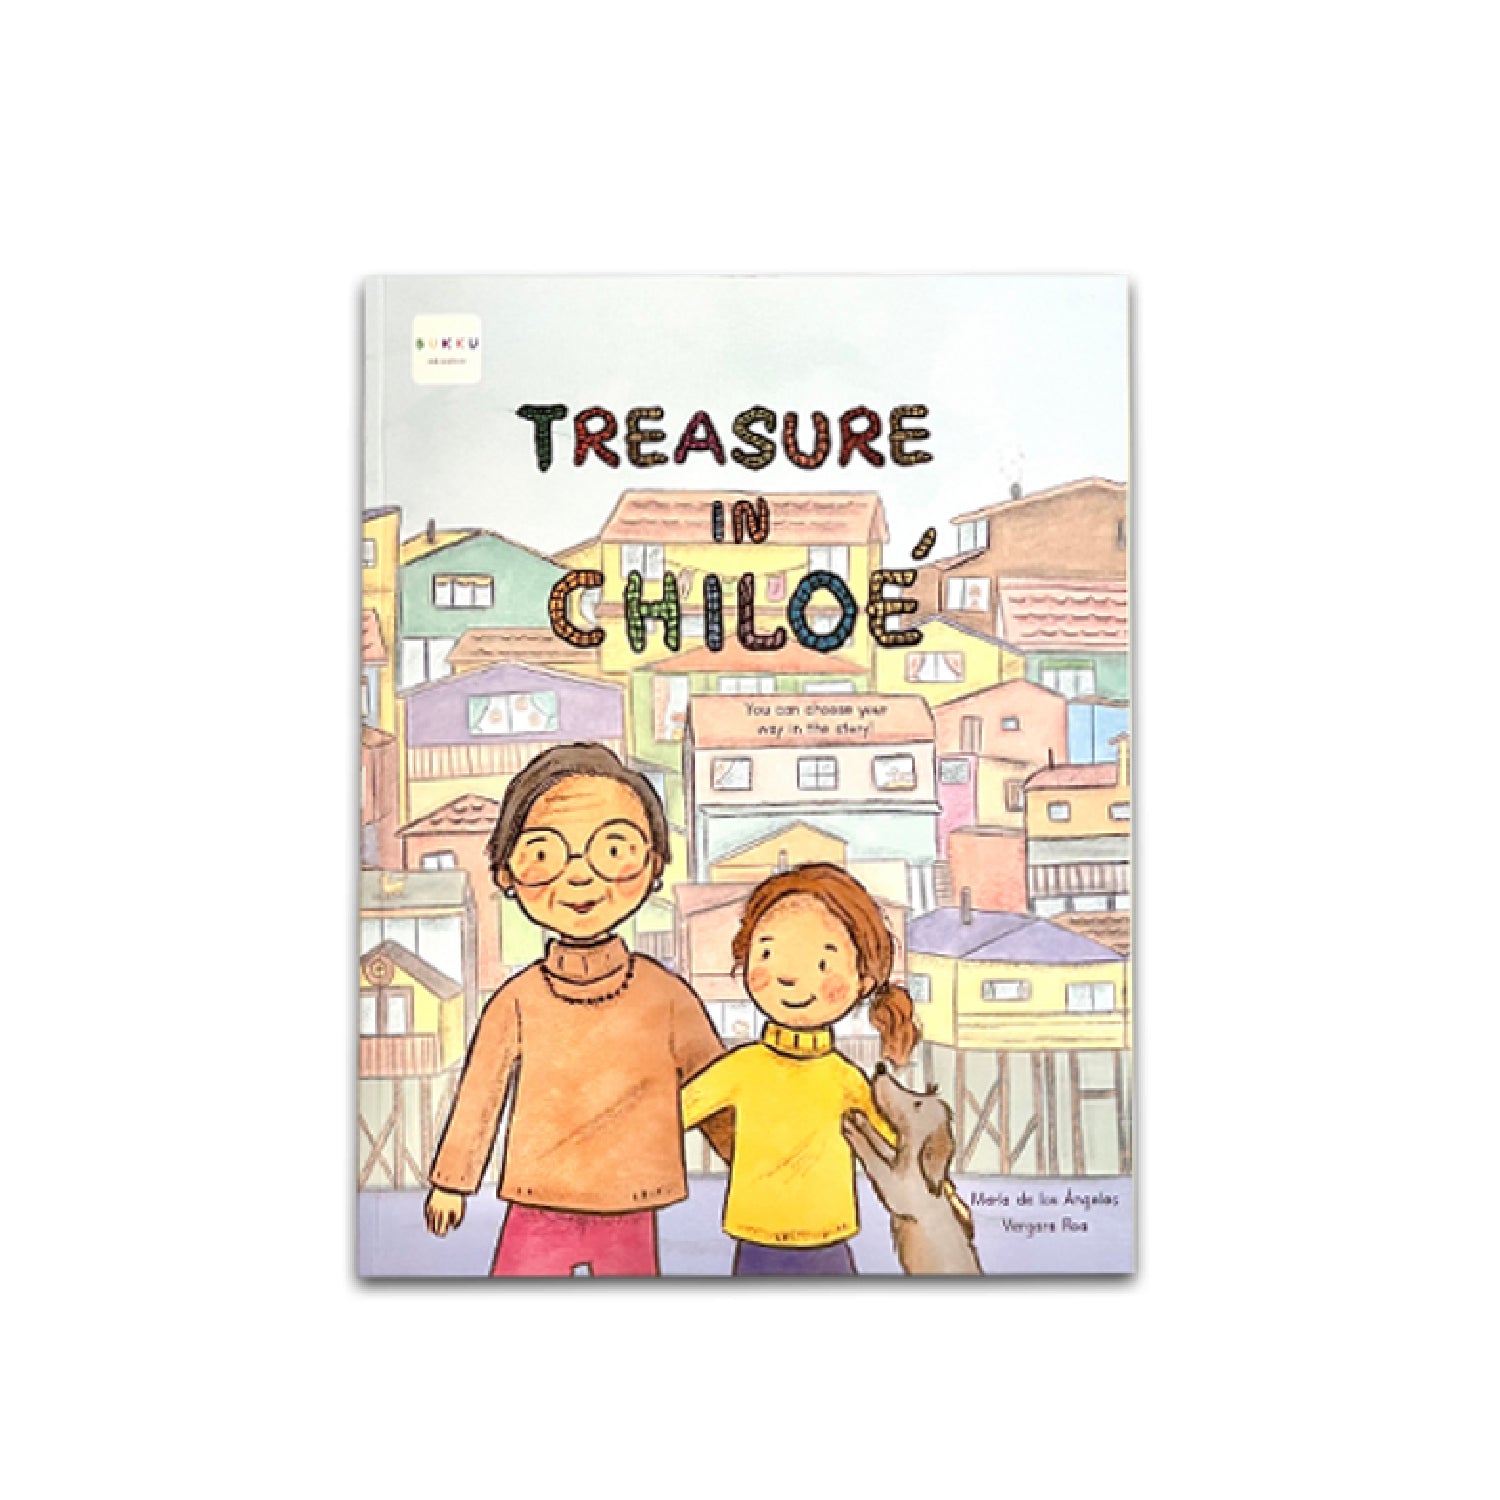 Treasure in Chiloe